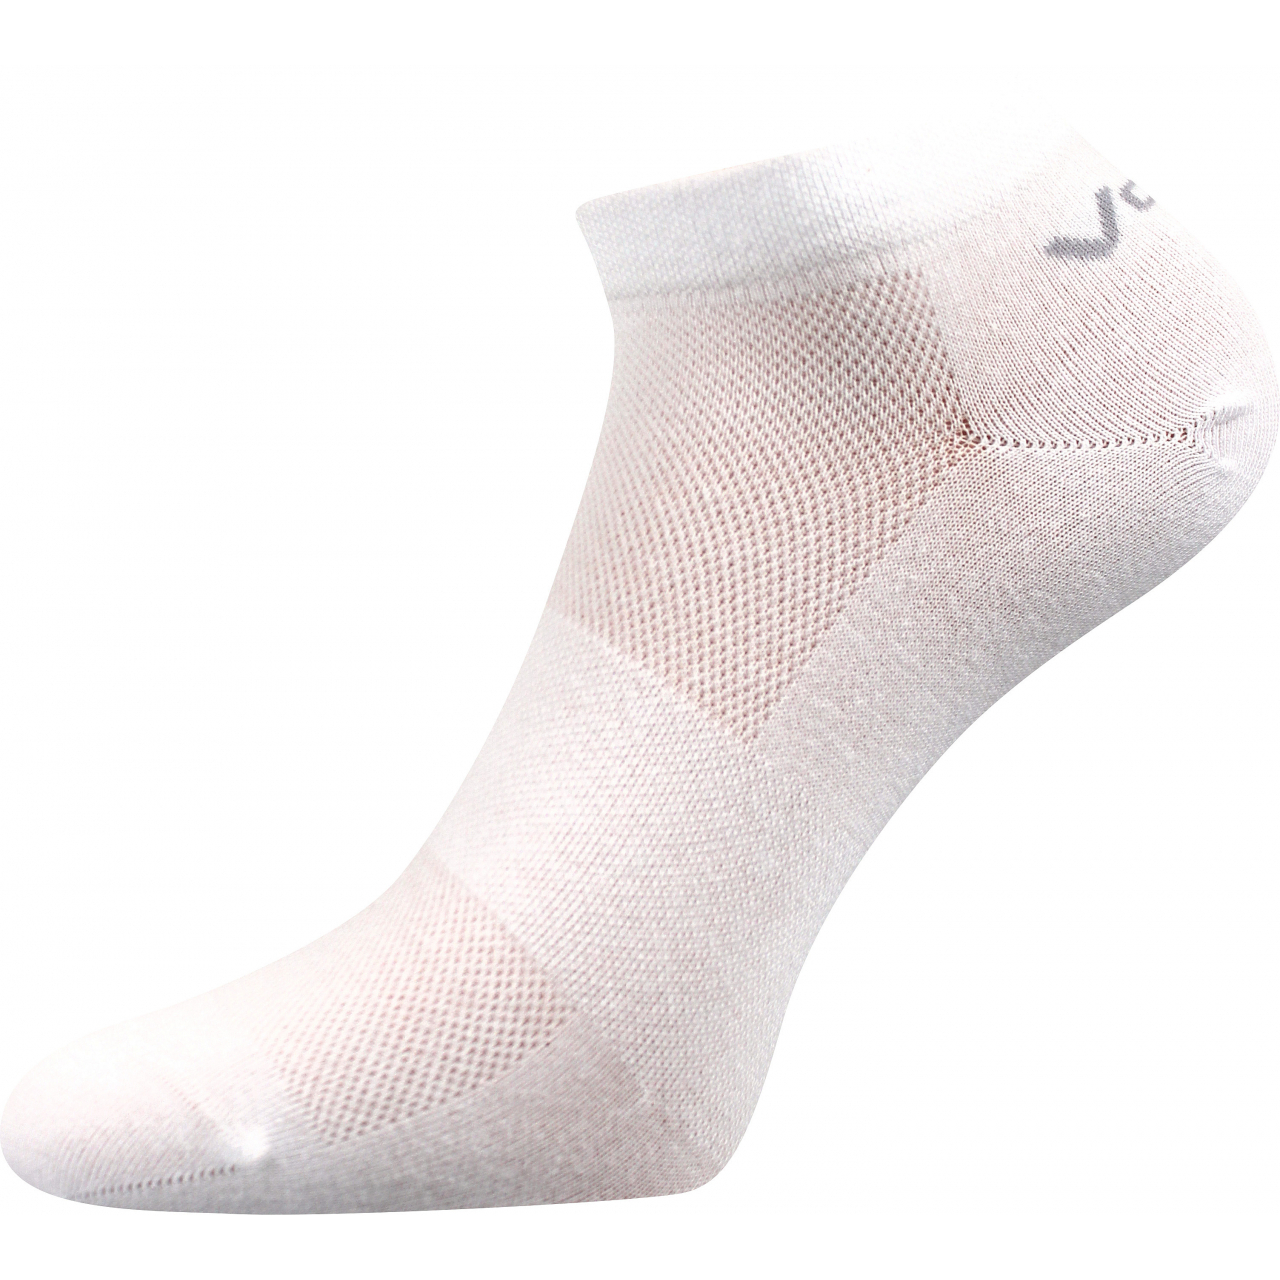 Ponožky unisex klasické Voxx Metys - bílé, 43-46